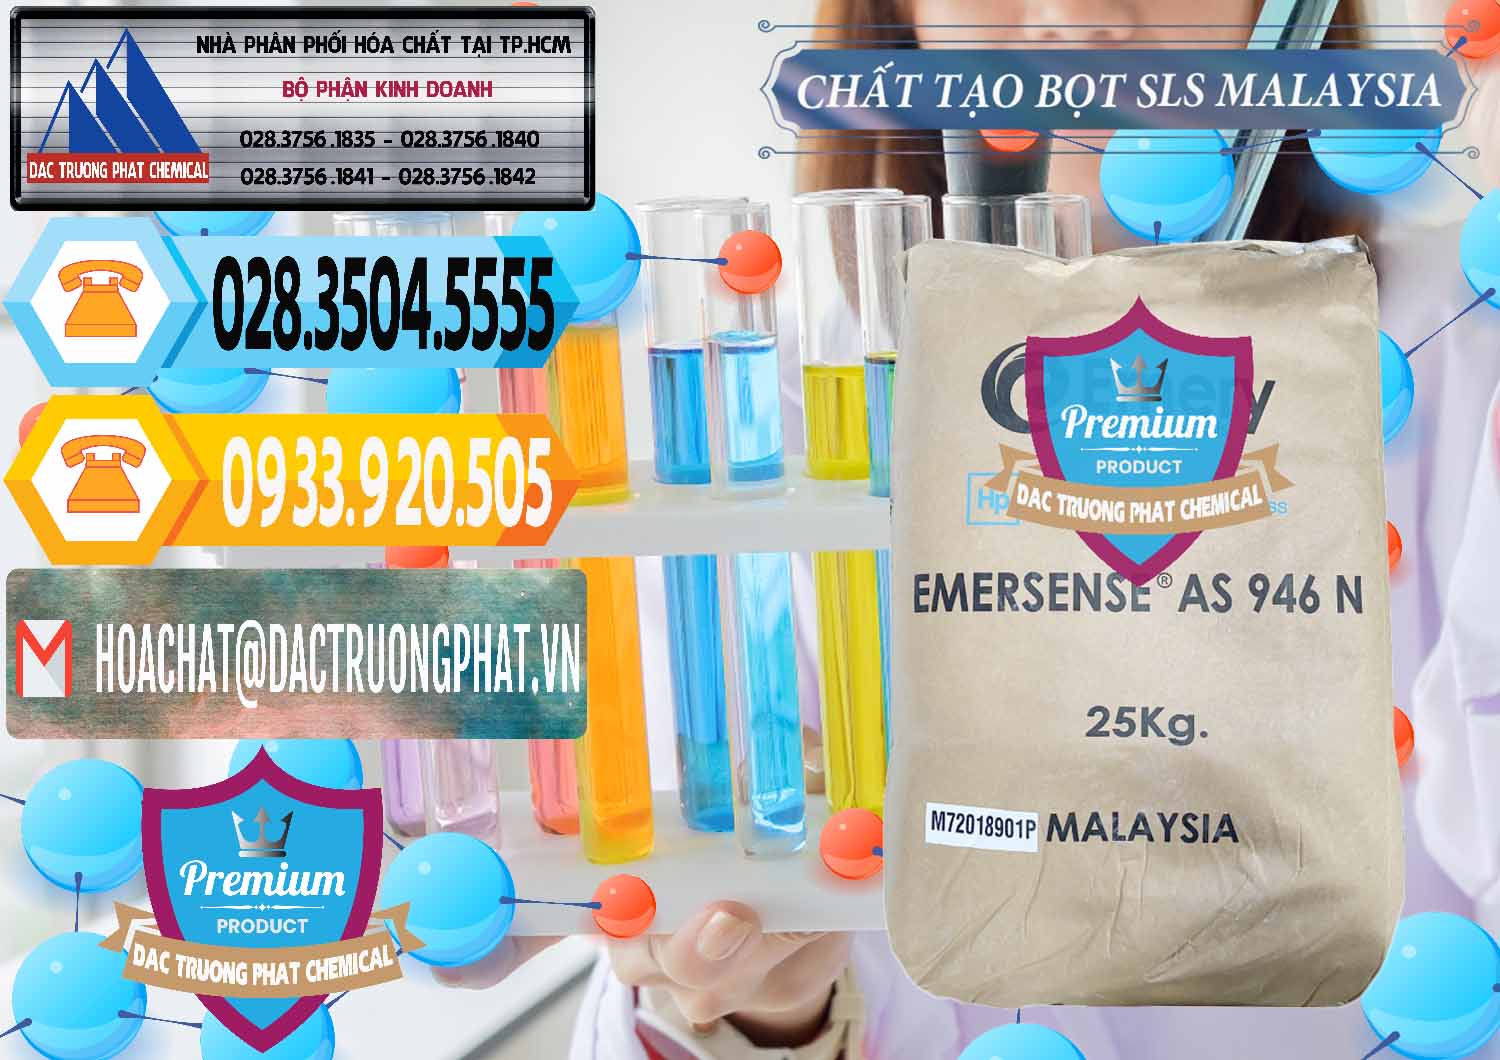 Nơi chuyên bán _ cung cấp Chất Tạo Bọt SLS Emery - Emersense AS 946N Mã Lai Malaysia - 0423 - Cty chuyên bán _ cung cấp hóa chất tại TP.HCM - hoachattayrua.net